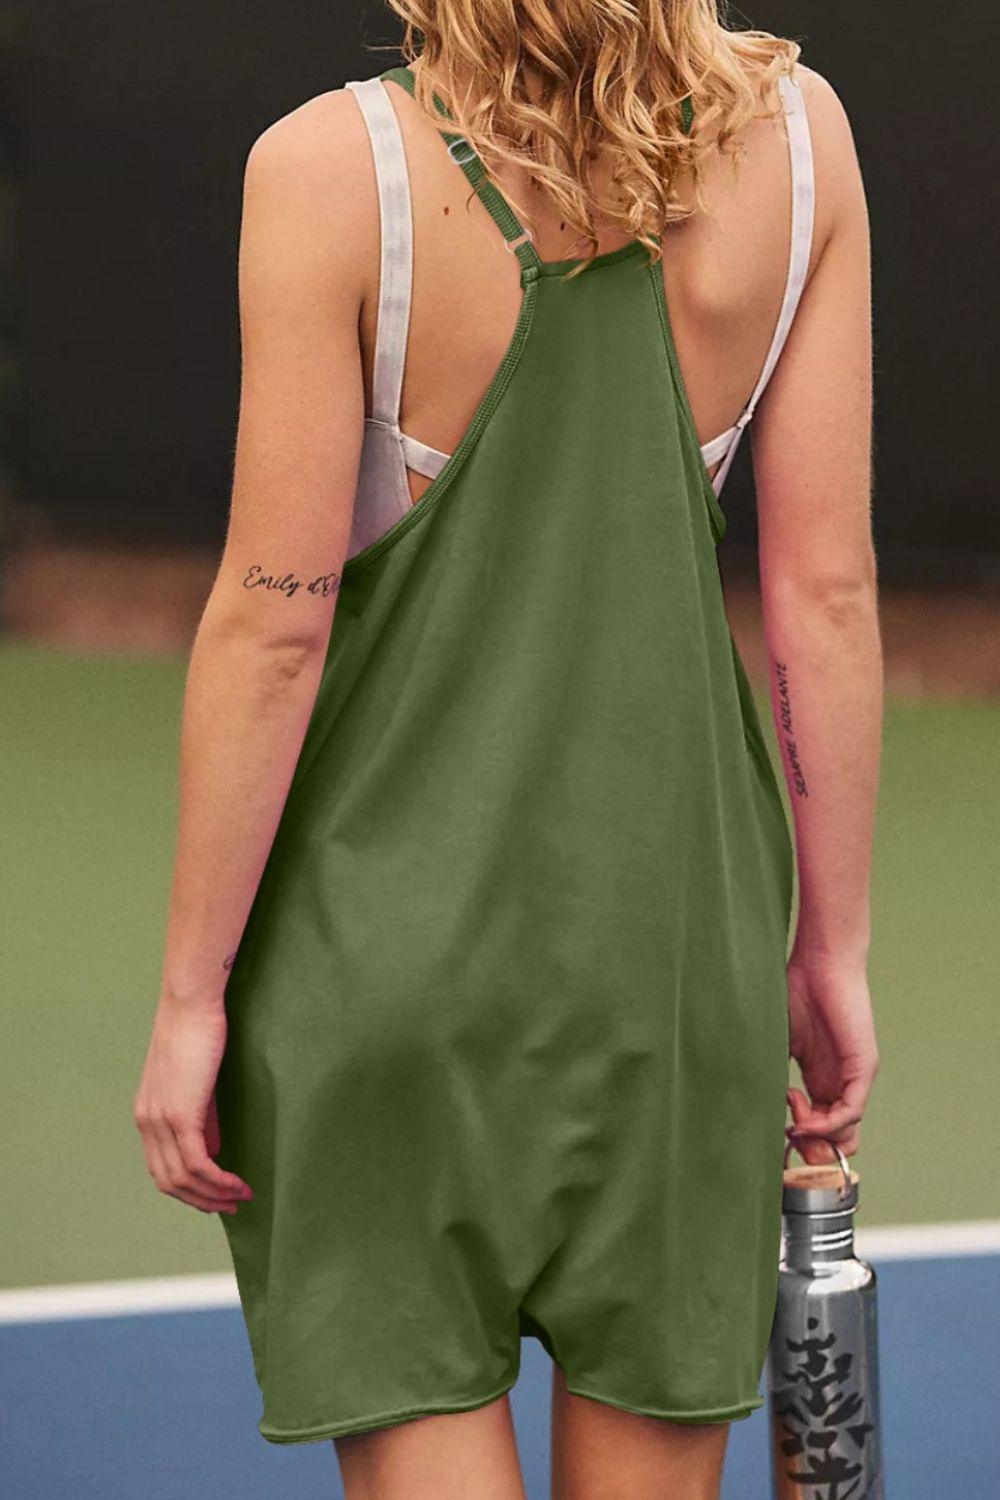 a woman in a green dress holding a tennis racquet